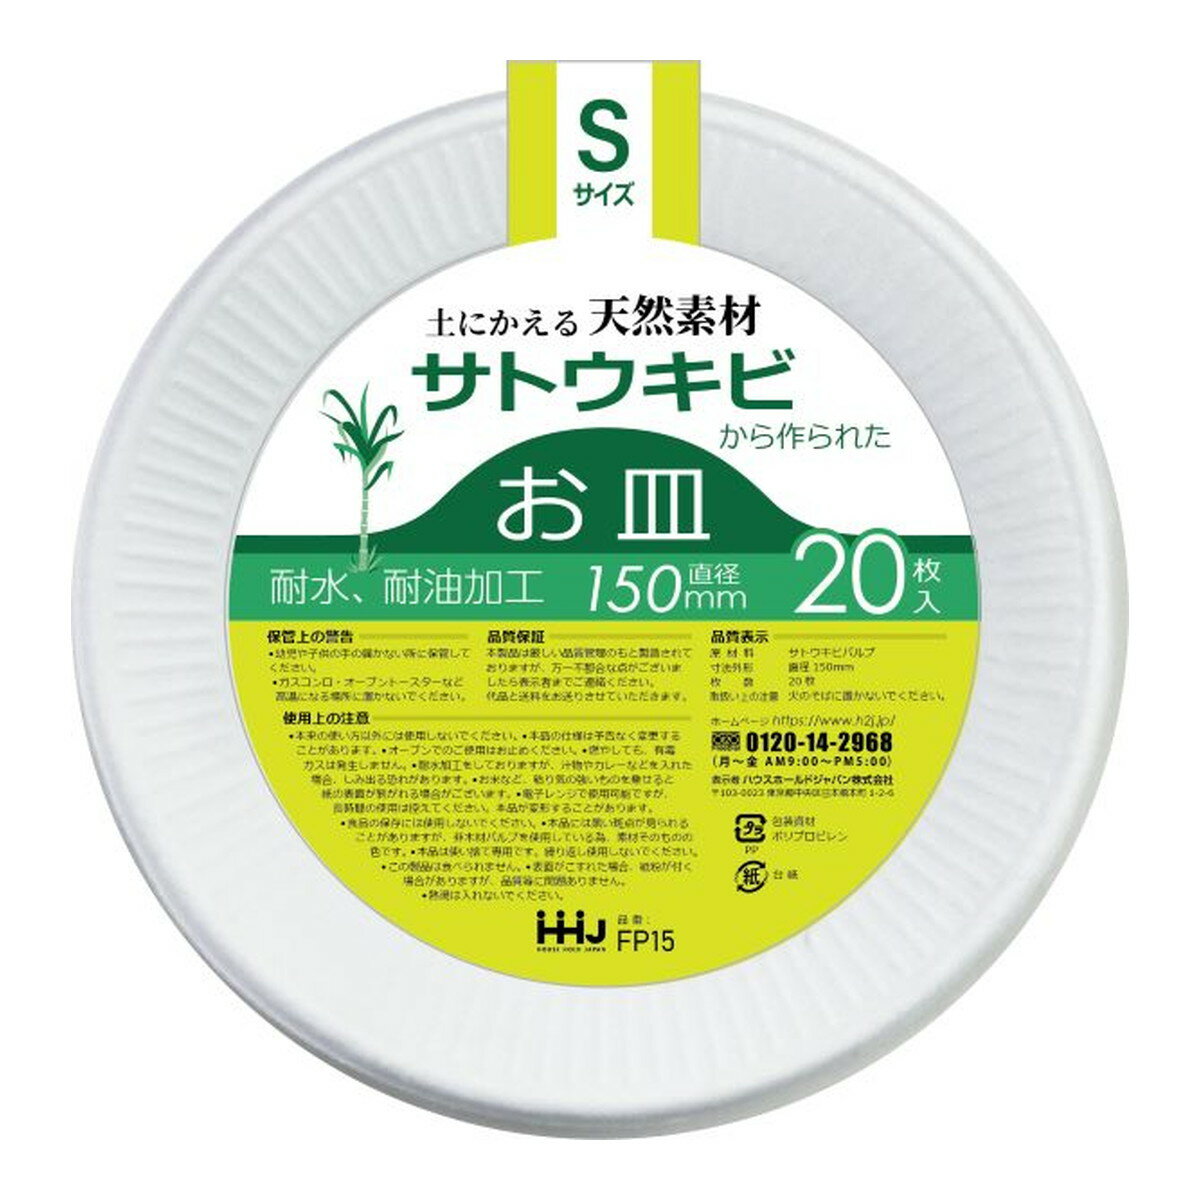 【令和・早い者勝ちセール】ハウスホールドジャパン FP15 土にかえる天然素材から作られた バガスお皿 Sサイズ 20枚入